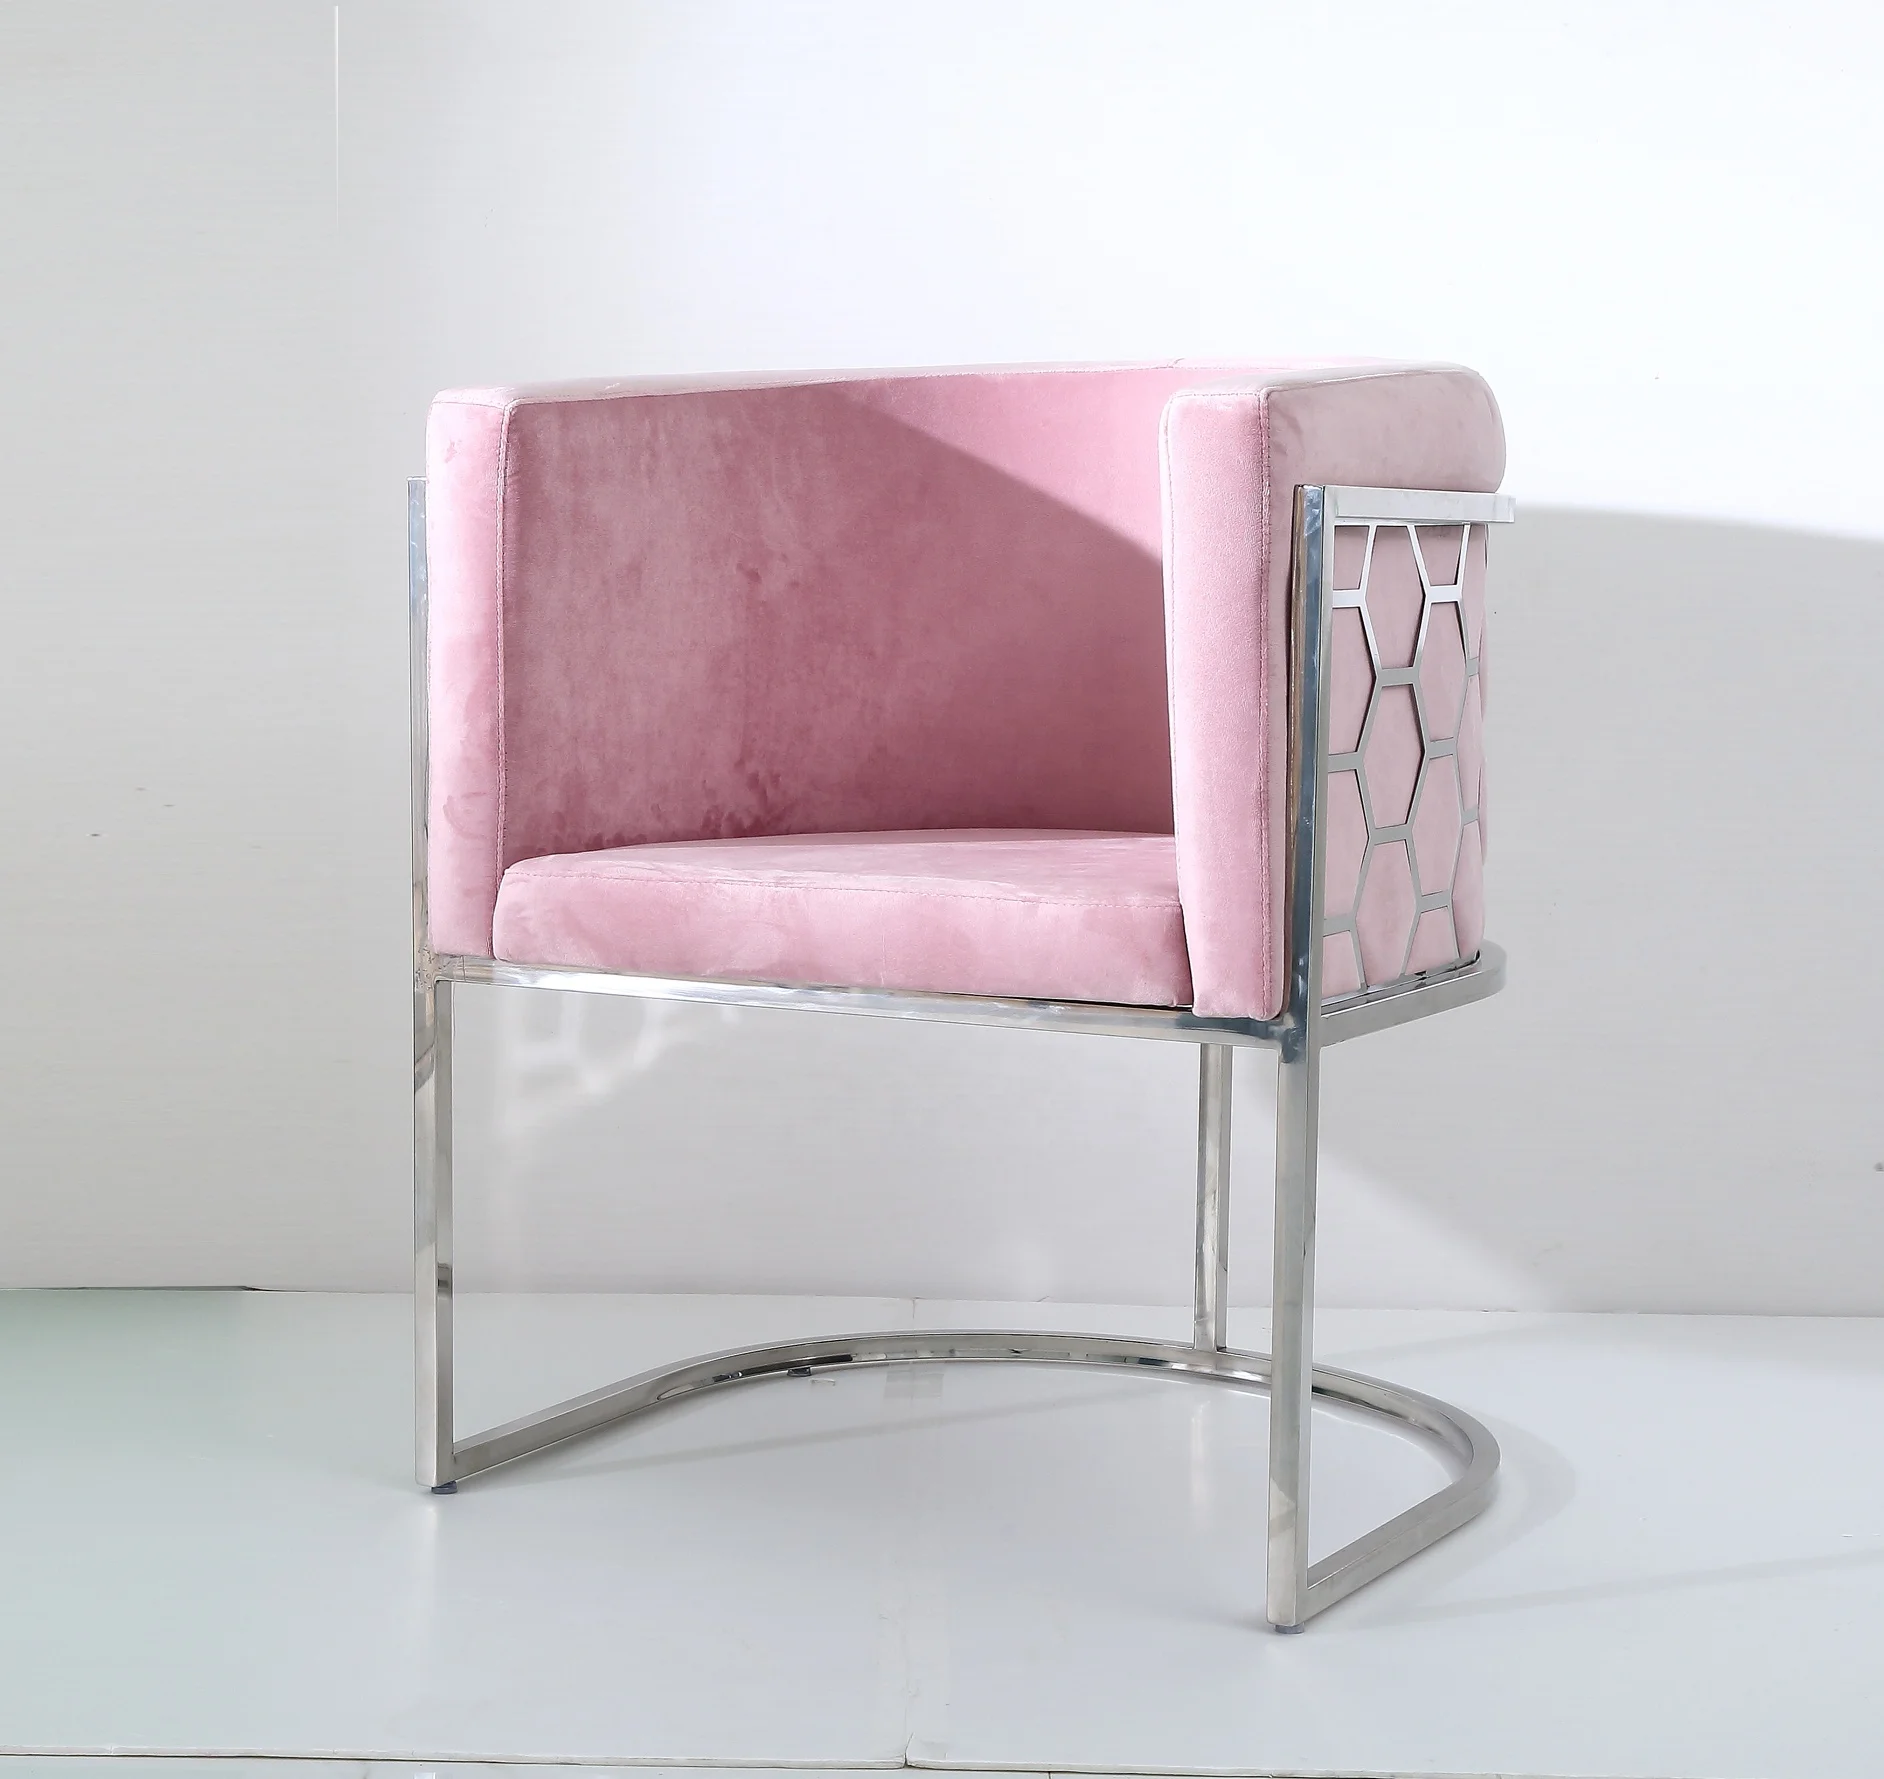 Британский стандарт, огнестойкий, сотовый, серебристый, из нержавеющей стали, клубный, розовый, коммерческий стул на руку